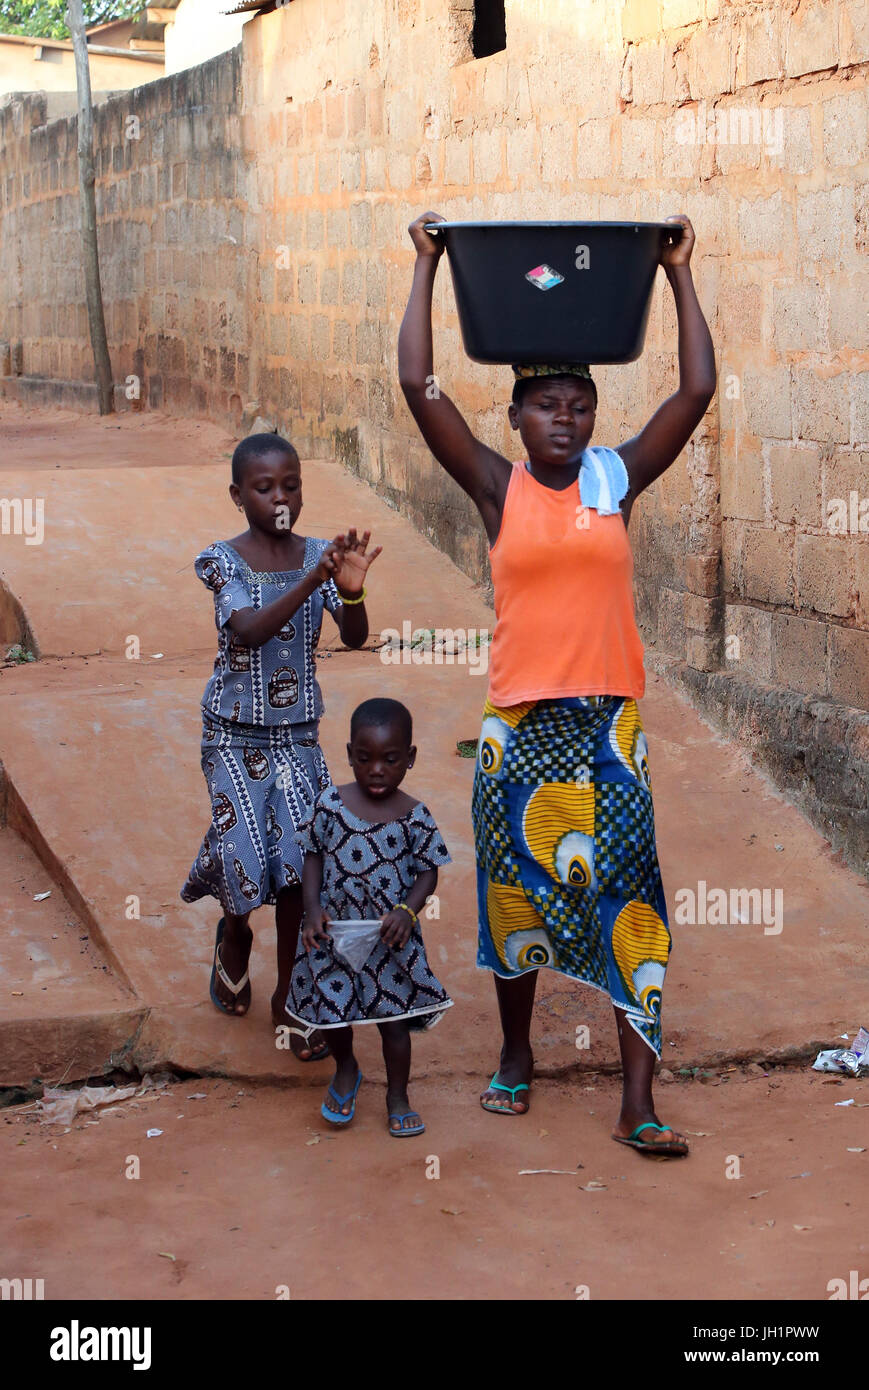 La vie du village africain. Corvée d'eau. Petite fille africaine portant un bassin d'eau sur la tête. Togoville. Le Togo. Banque D'Images